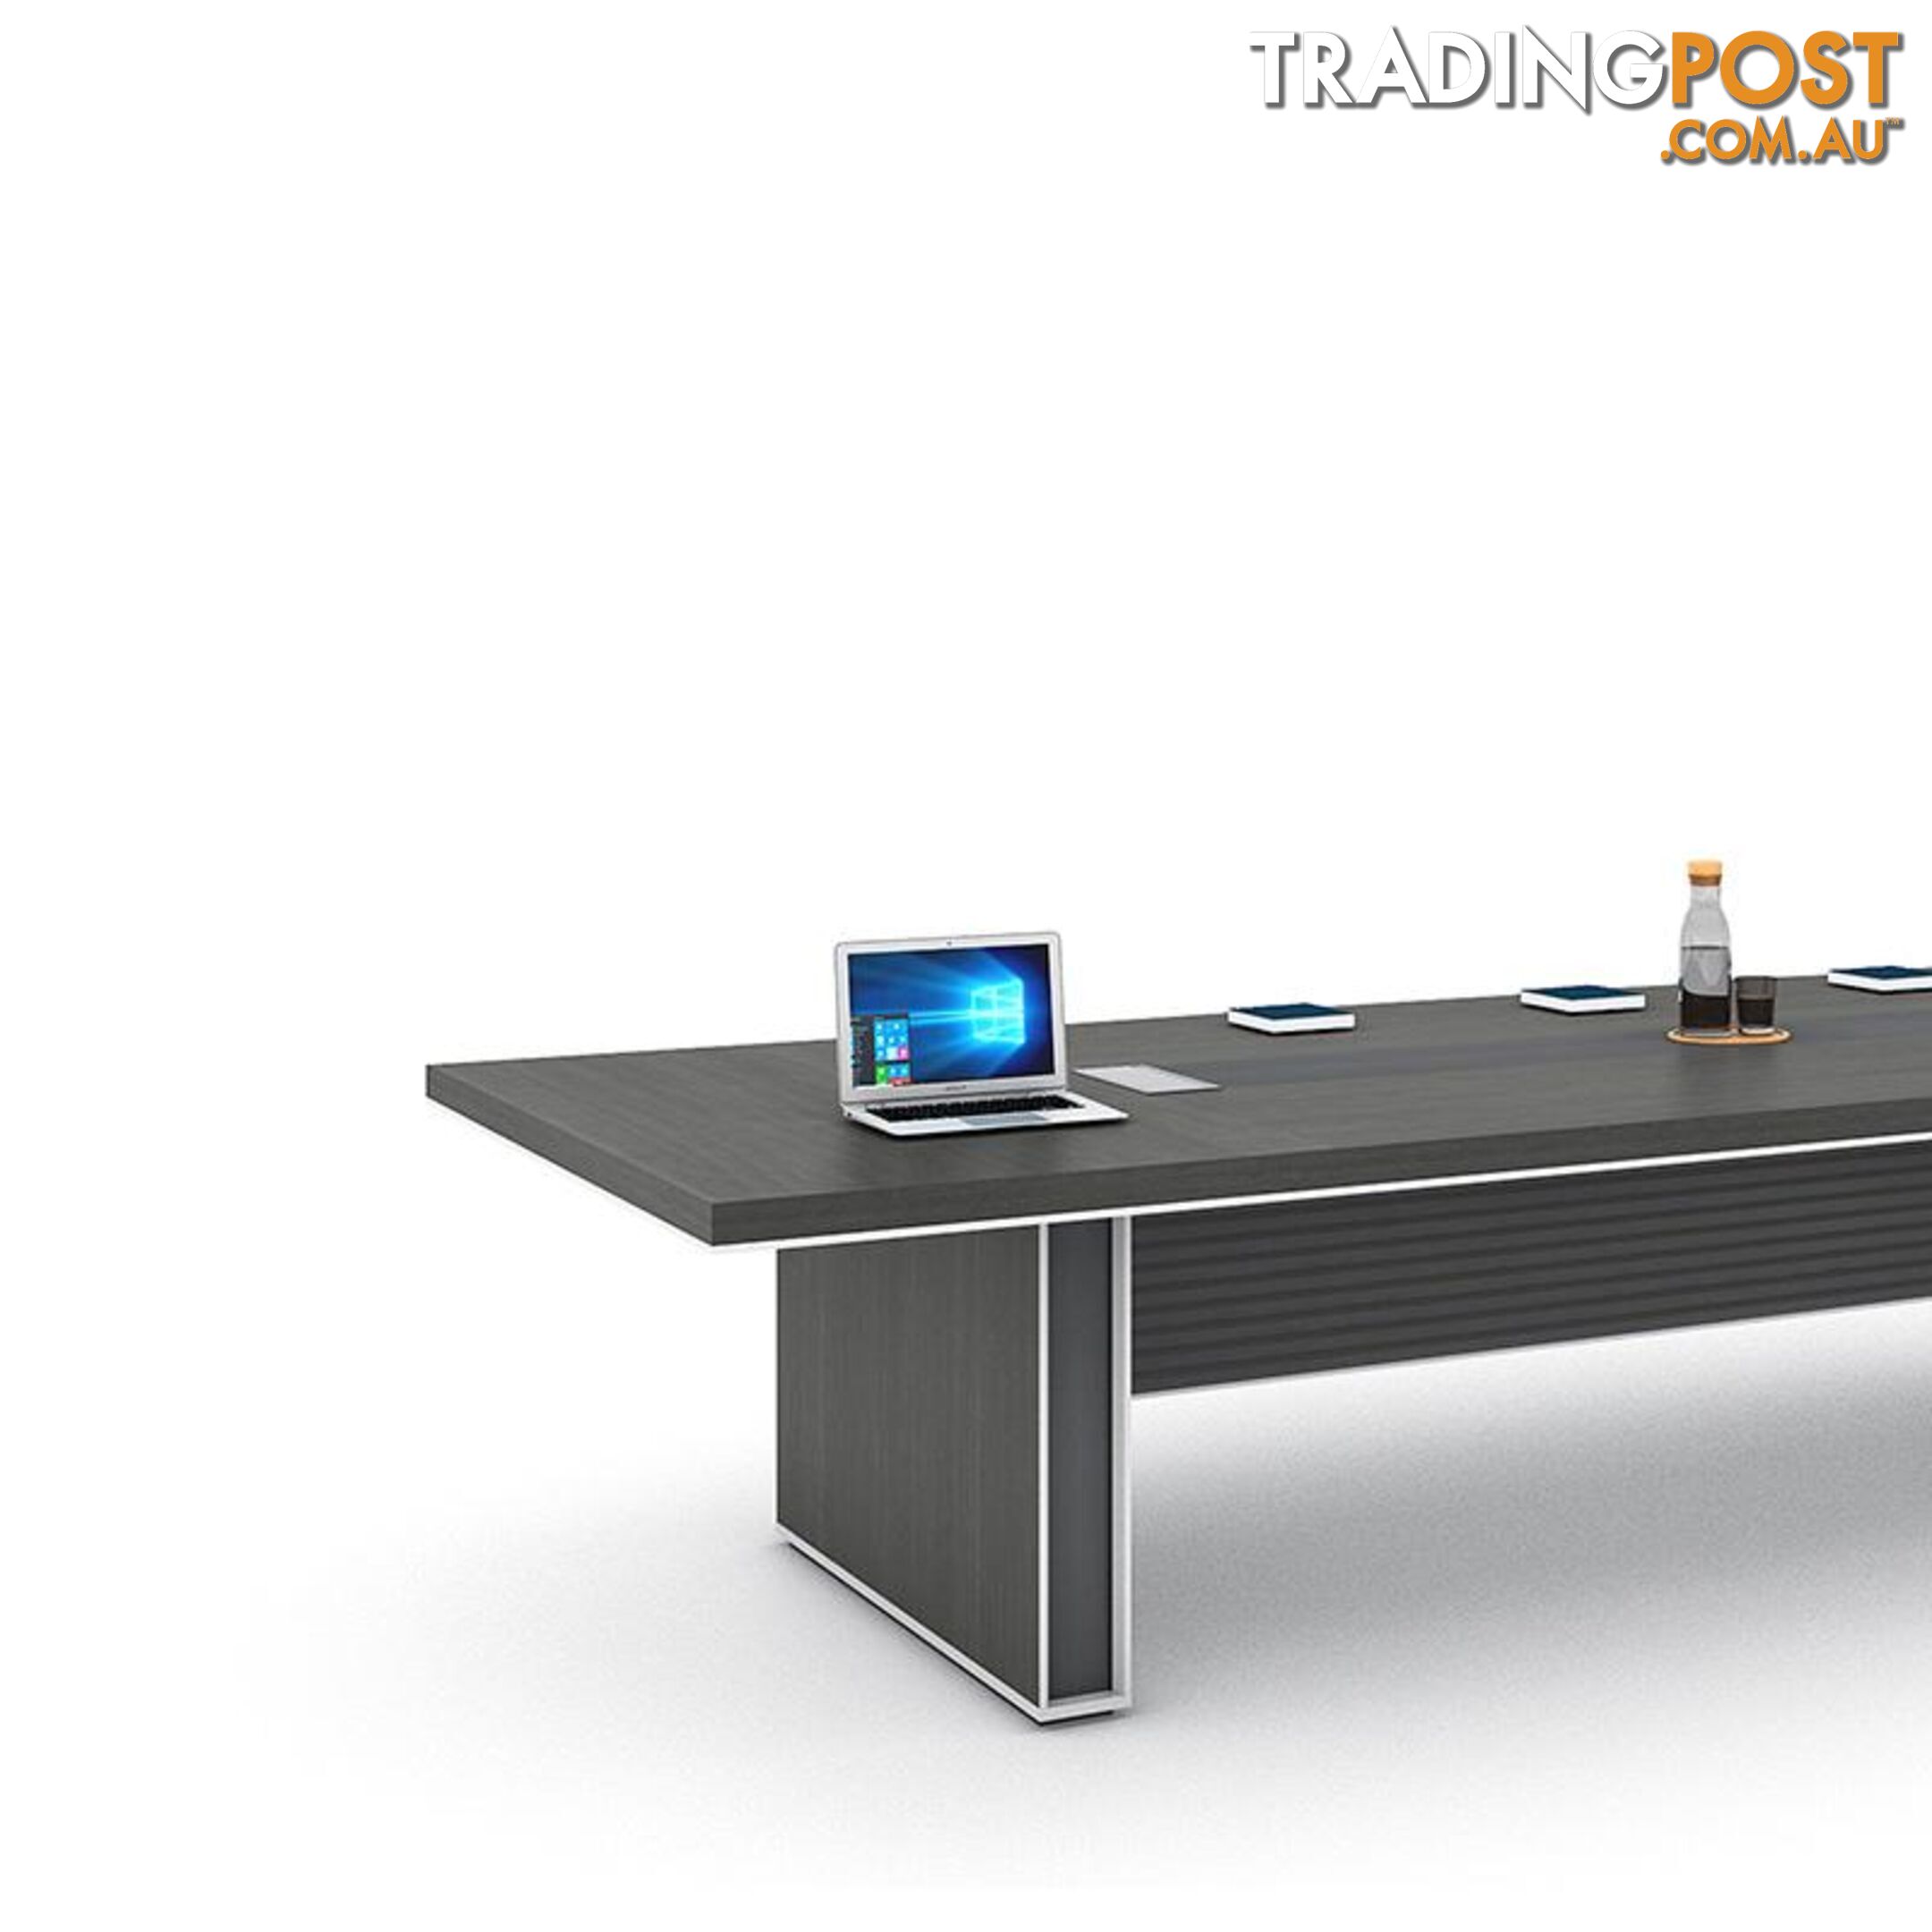 MATEES Boardroom Table 2.8M - Grey/ Brown - DF-BJSC1228 - 9334719010434